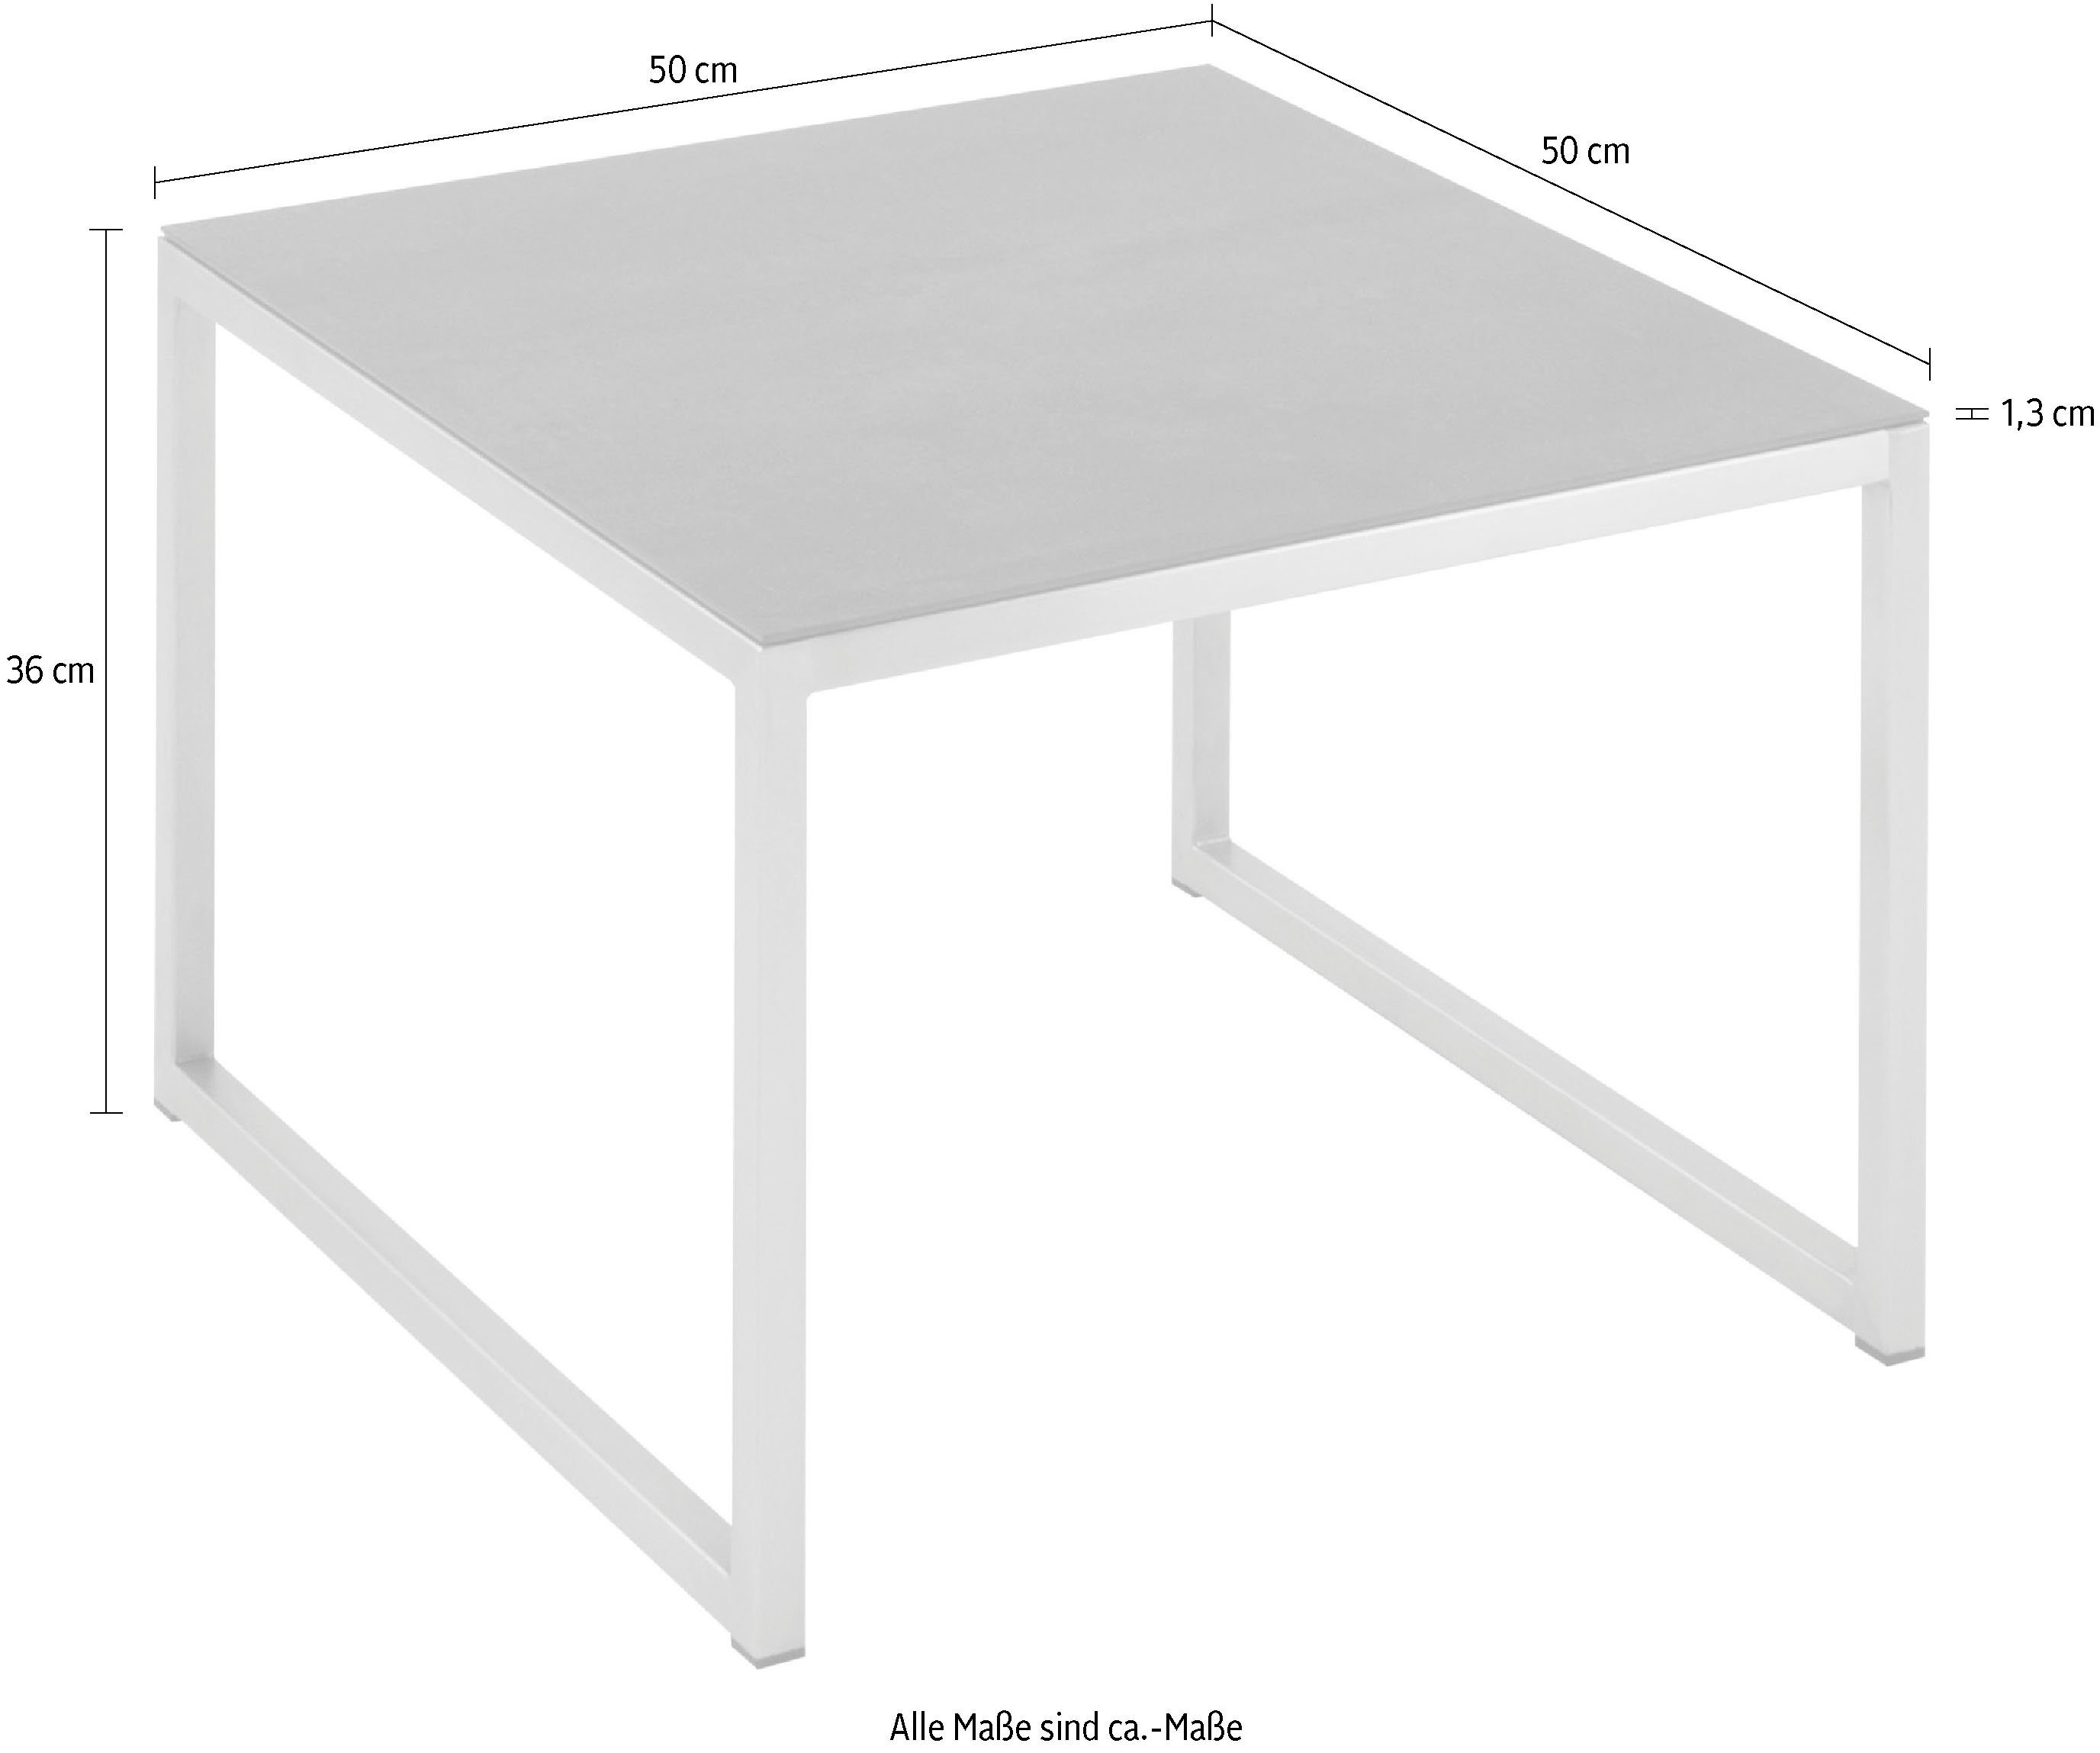 Henke Möbel Beistelltisch, Tischplatte Keramik hochwertiger aus